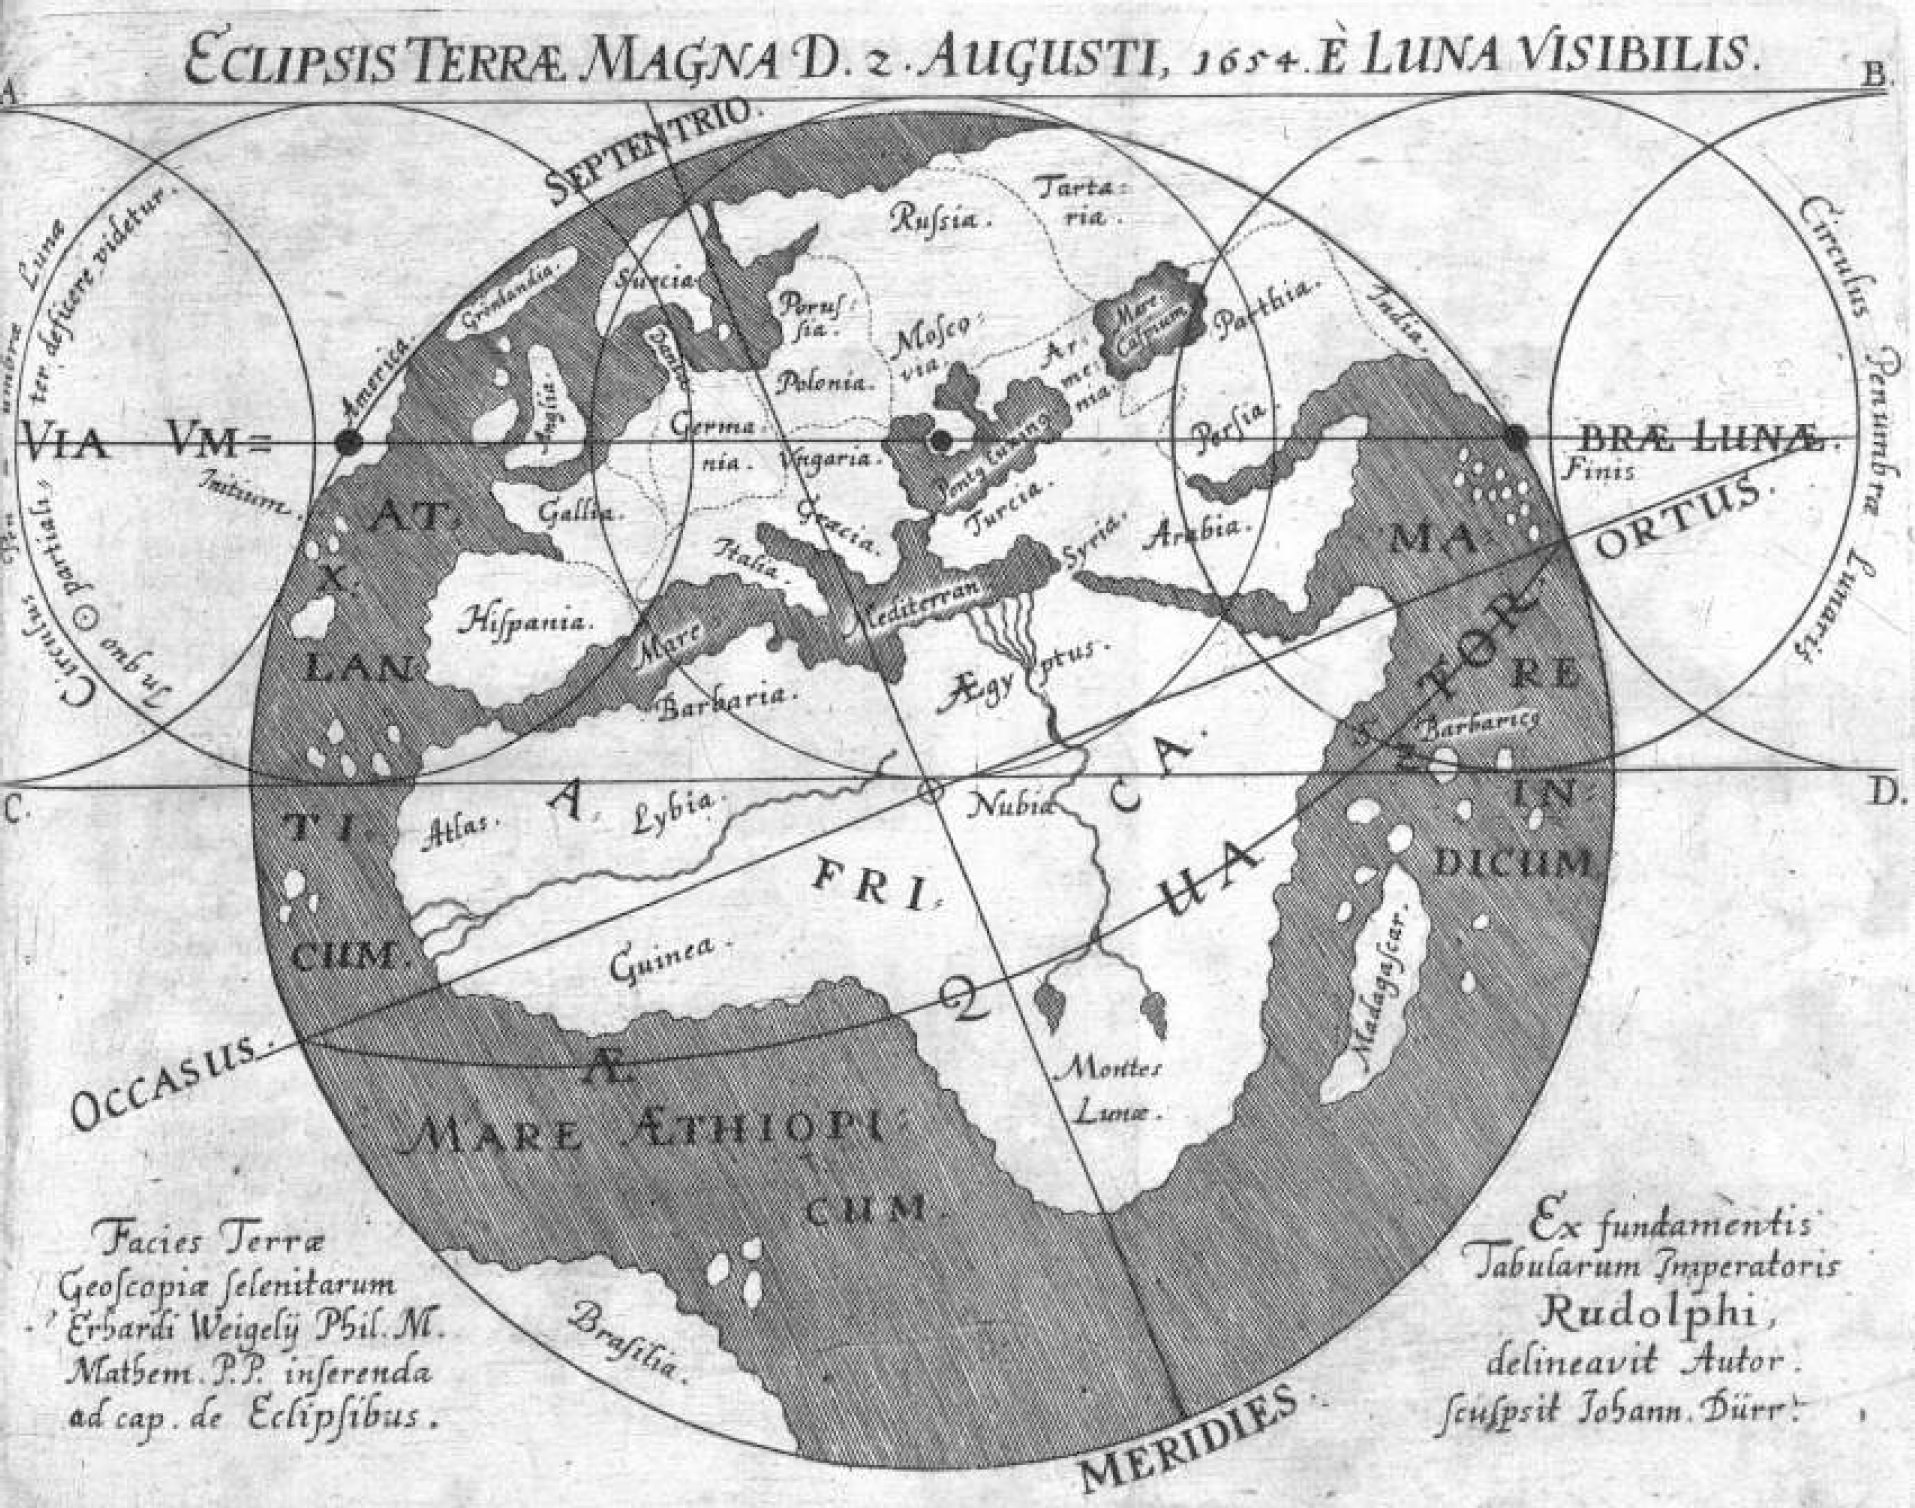 Weigels Mondschattenkarte zur Sonnenfinsternis am 2./12. August 1654